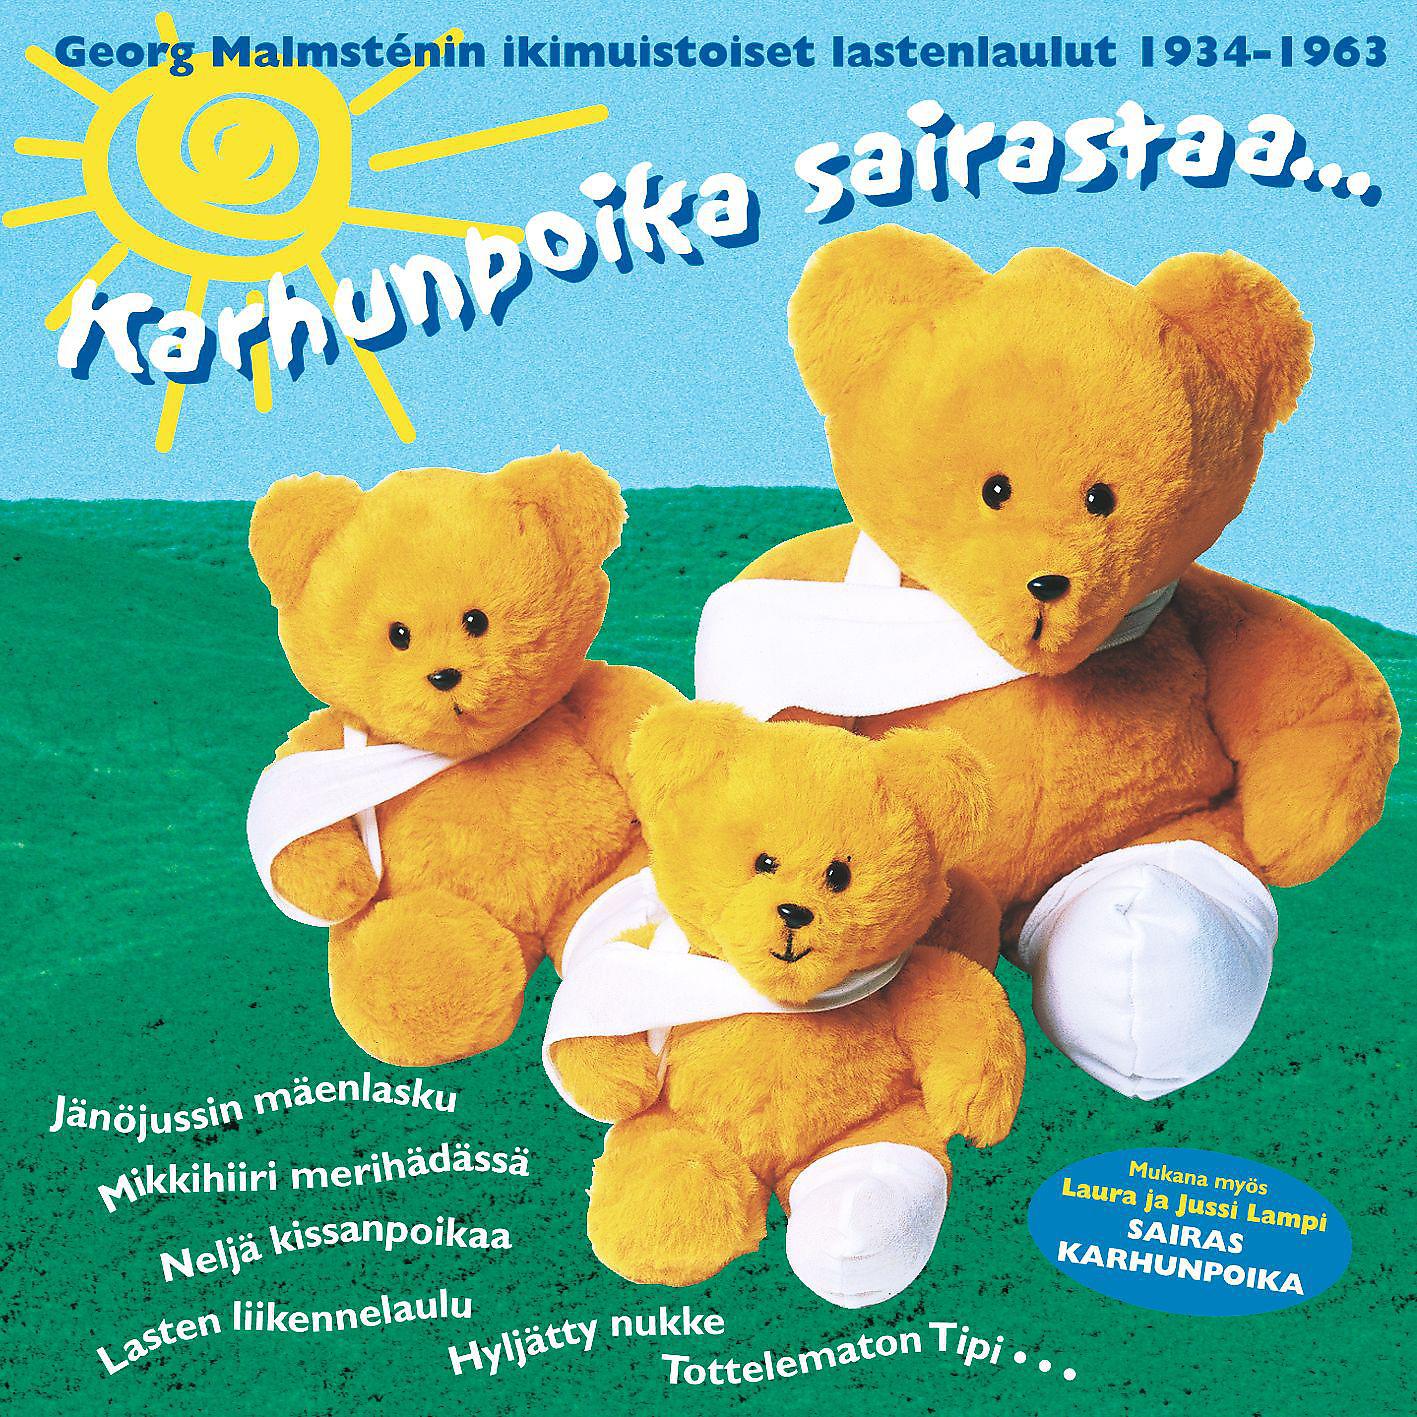 Постер альбома Karhunpoika sairastaa